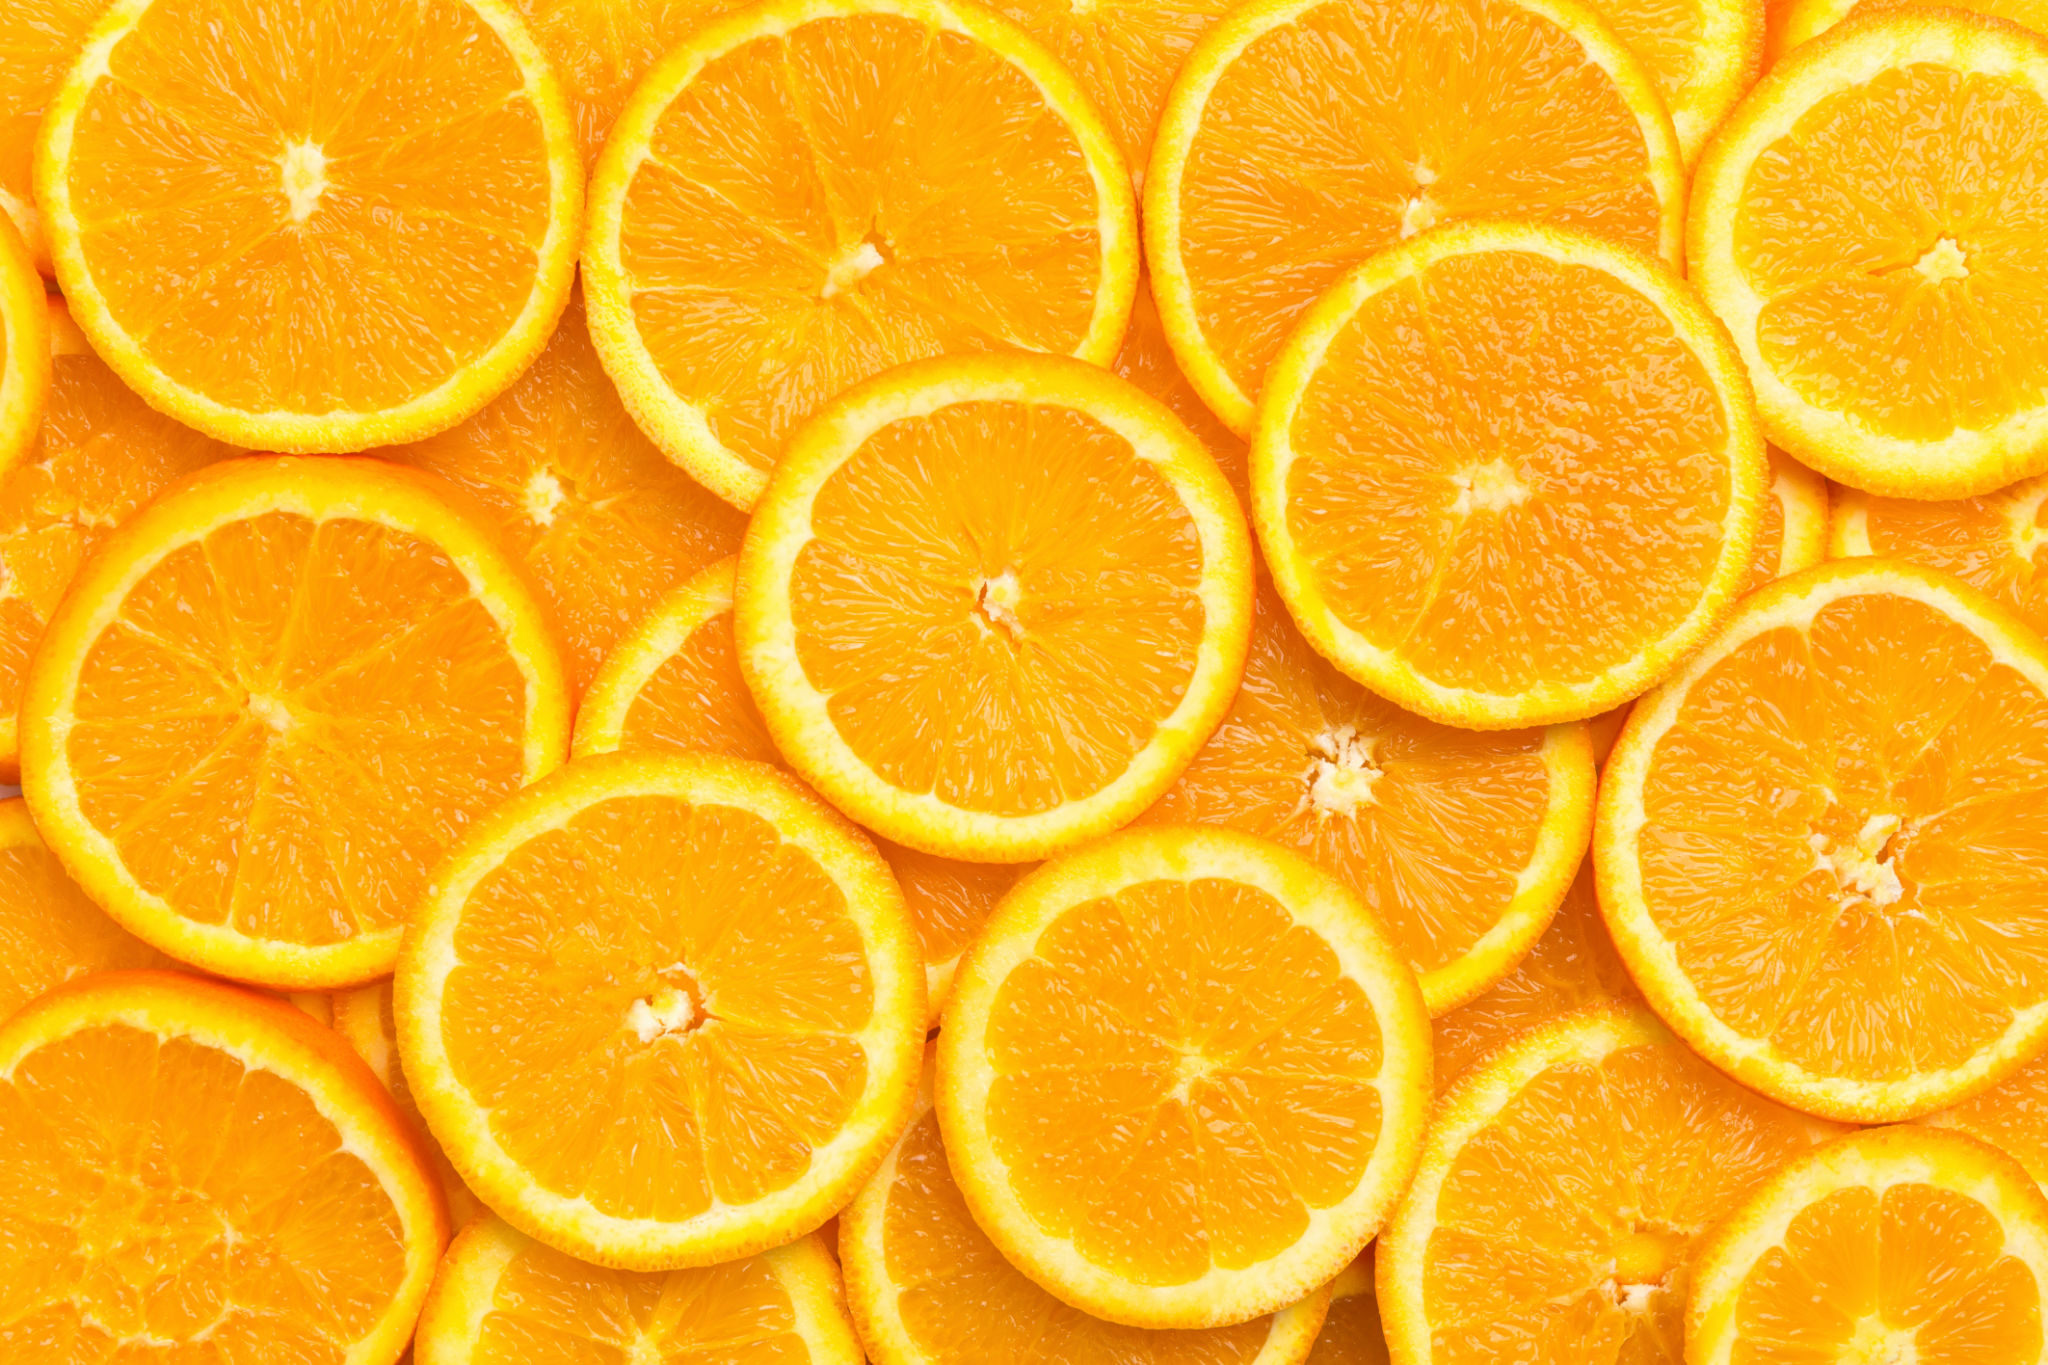 اللون البرتقالي